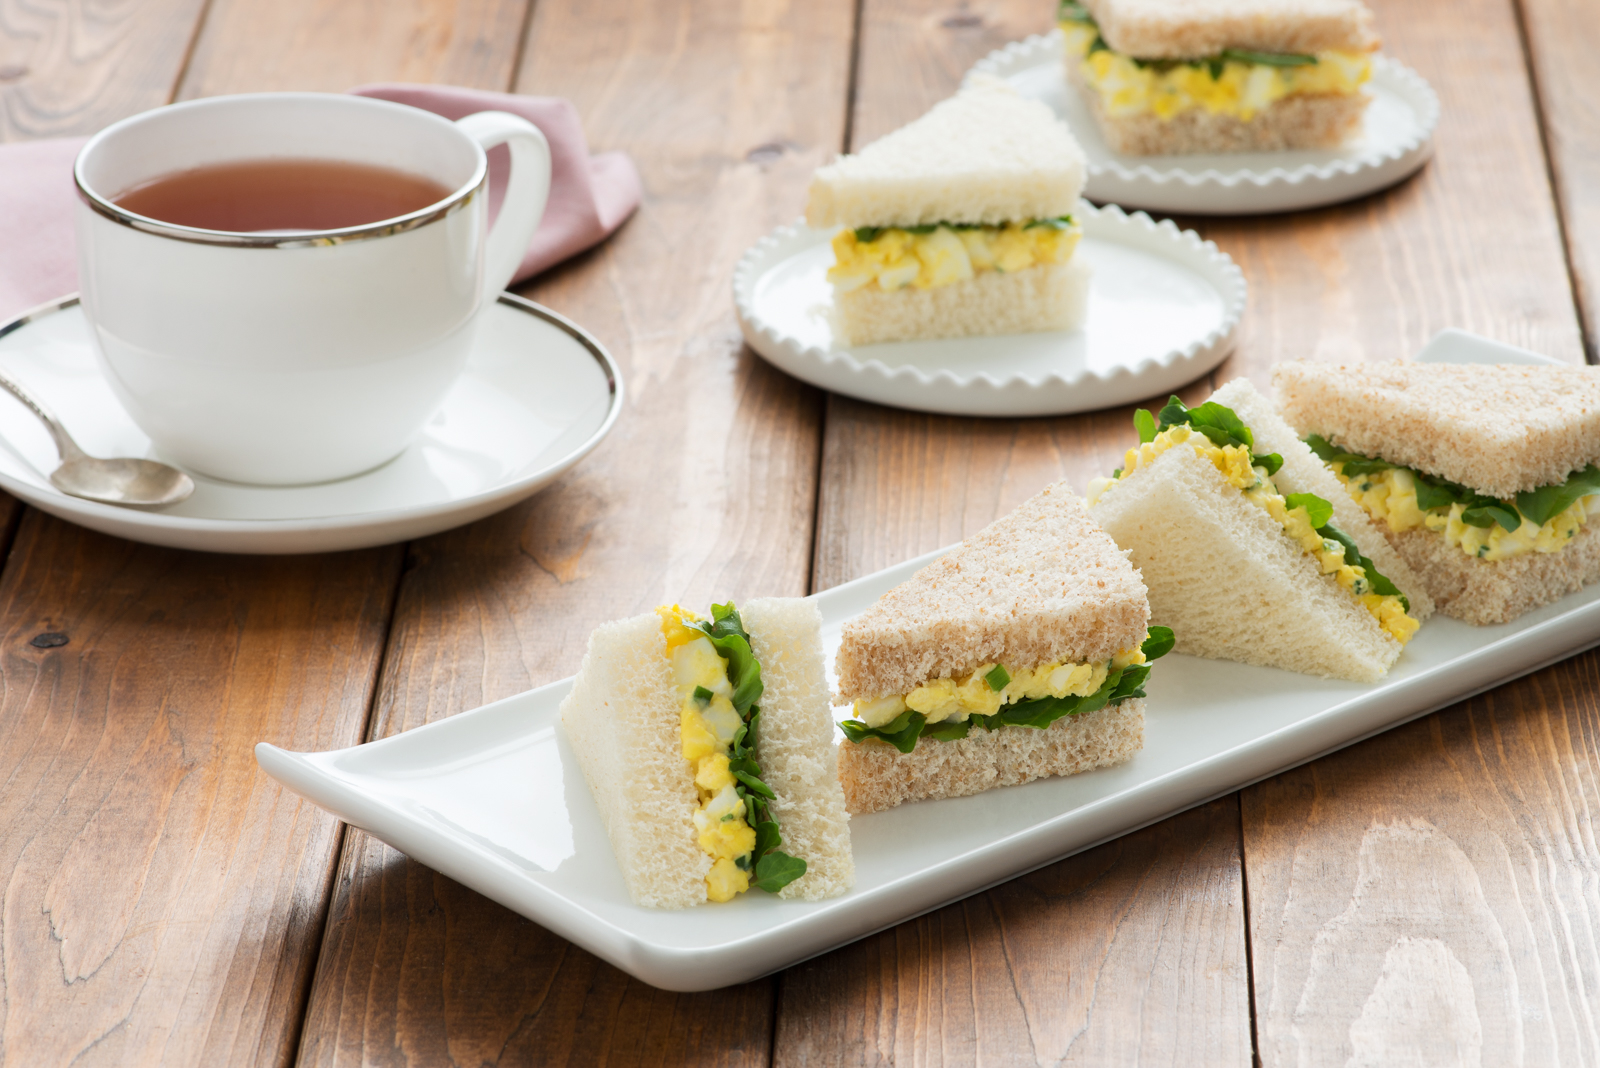 Süße Japanmädchen im Sandwich hart rangenommen – Telegraph